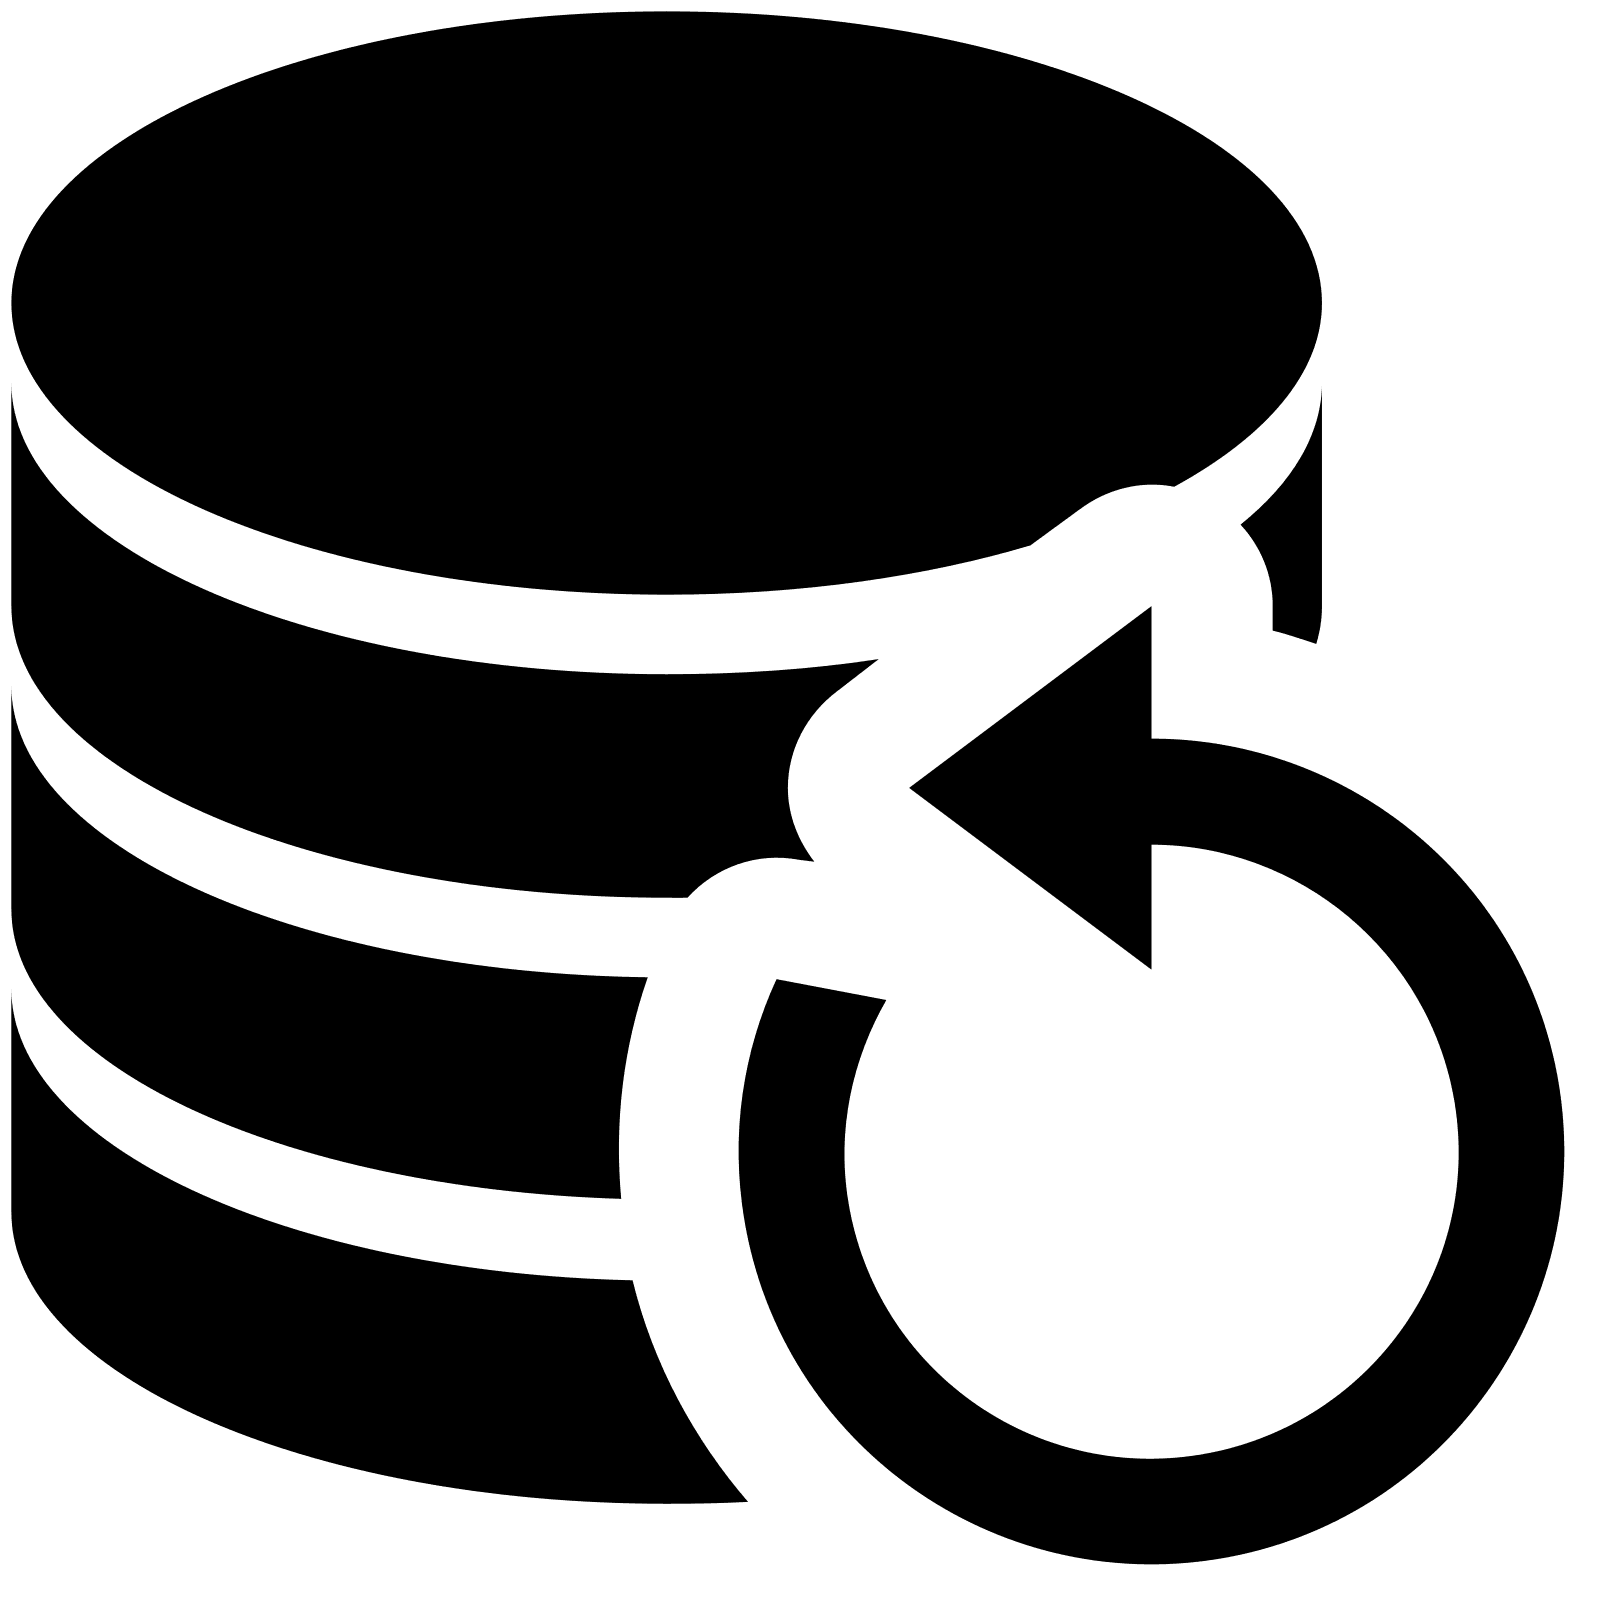 Database auto-backup